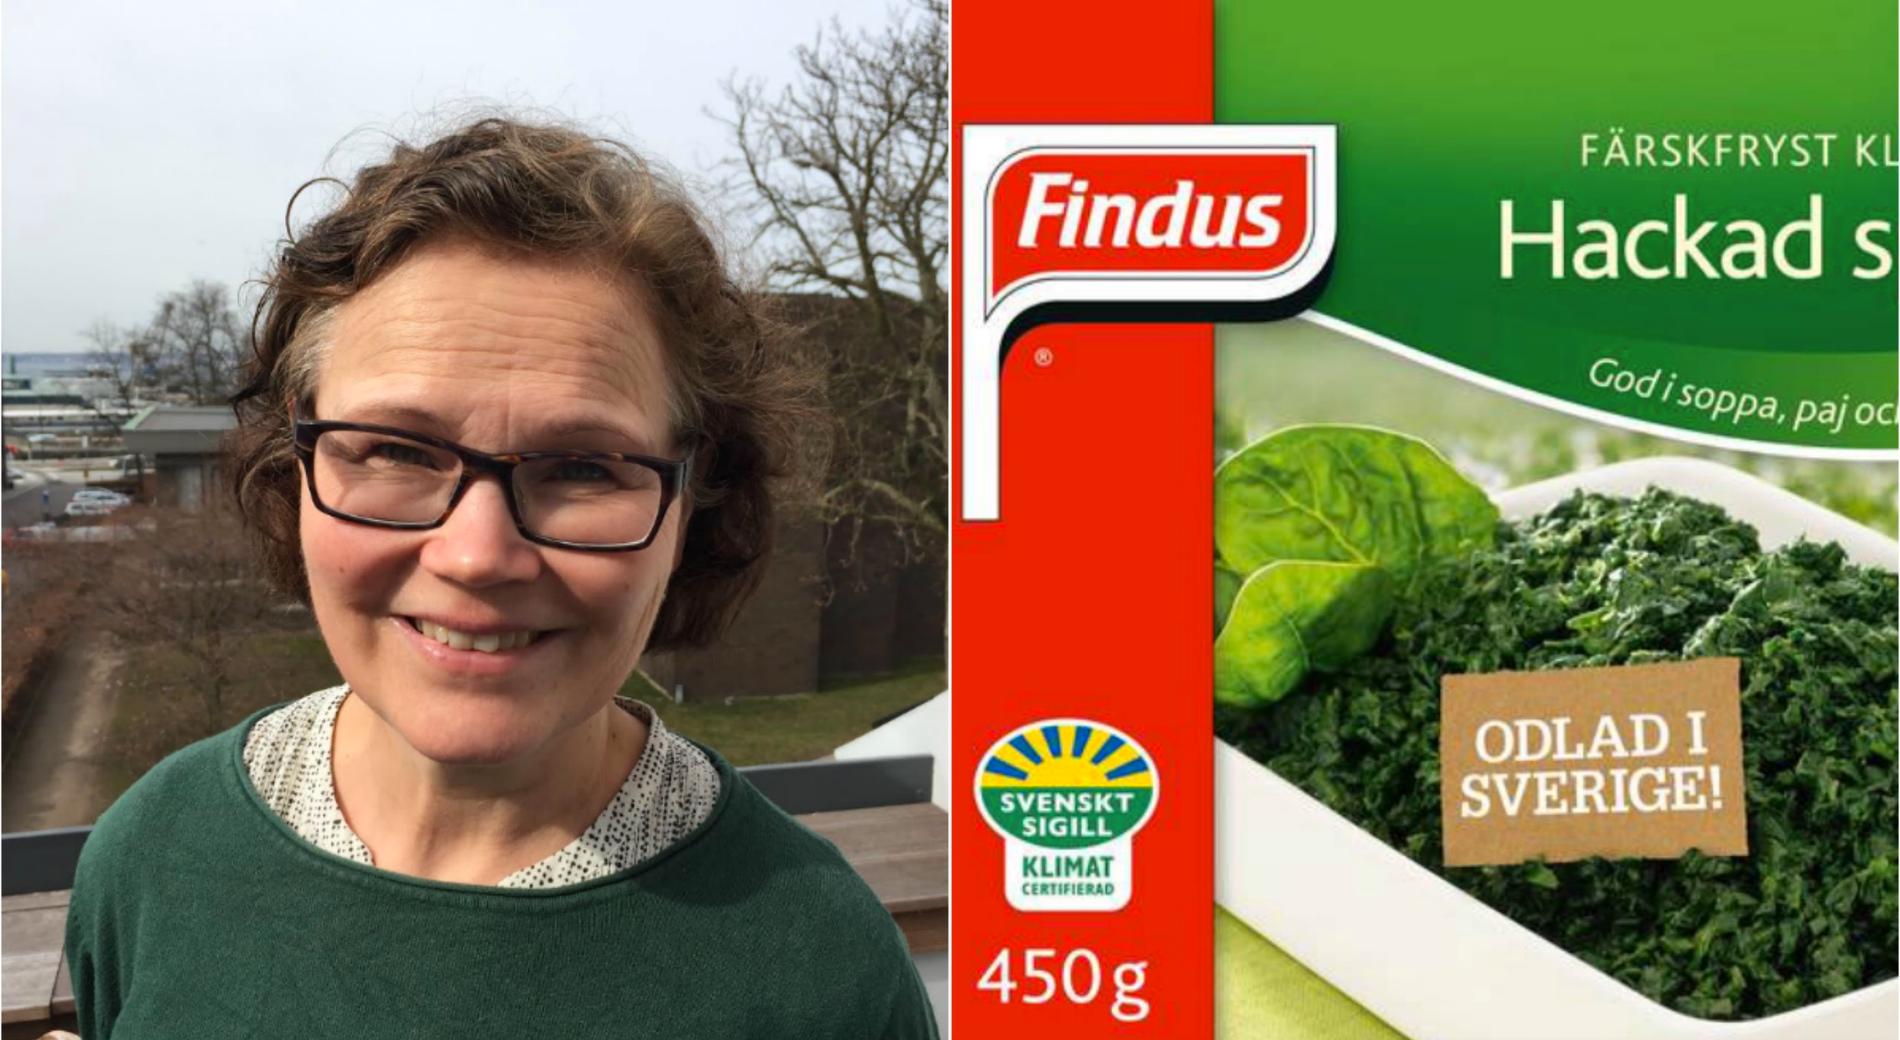 Ica-handlaren Ylva Magnesten plockade bort alla Findus produkter i Frysdisken efter beskedet om nedläggningen i Bjuv.